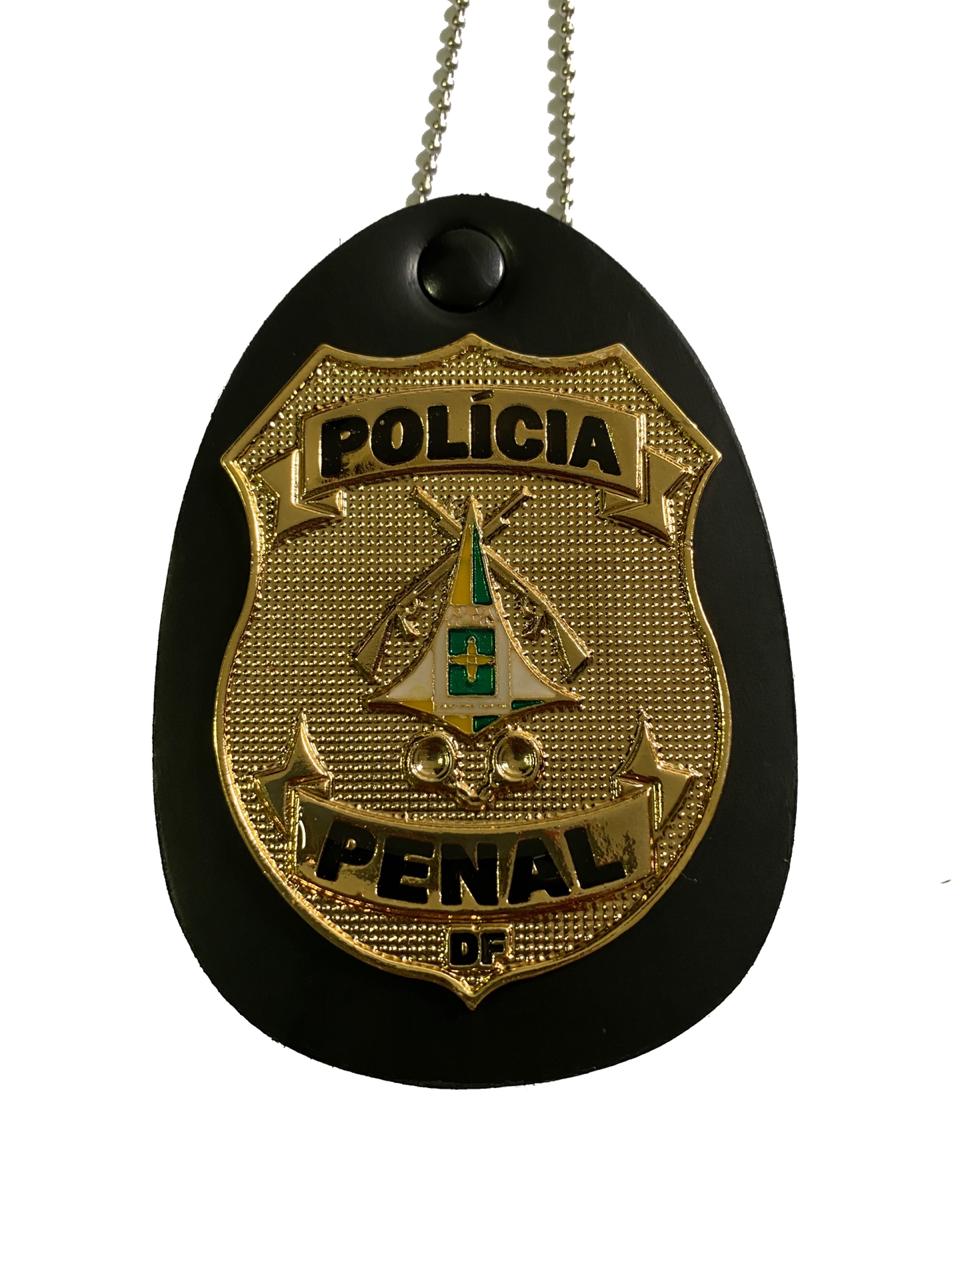 POLÍCIA PENAL DISTRITO FEDERAL - PPDF